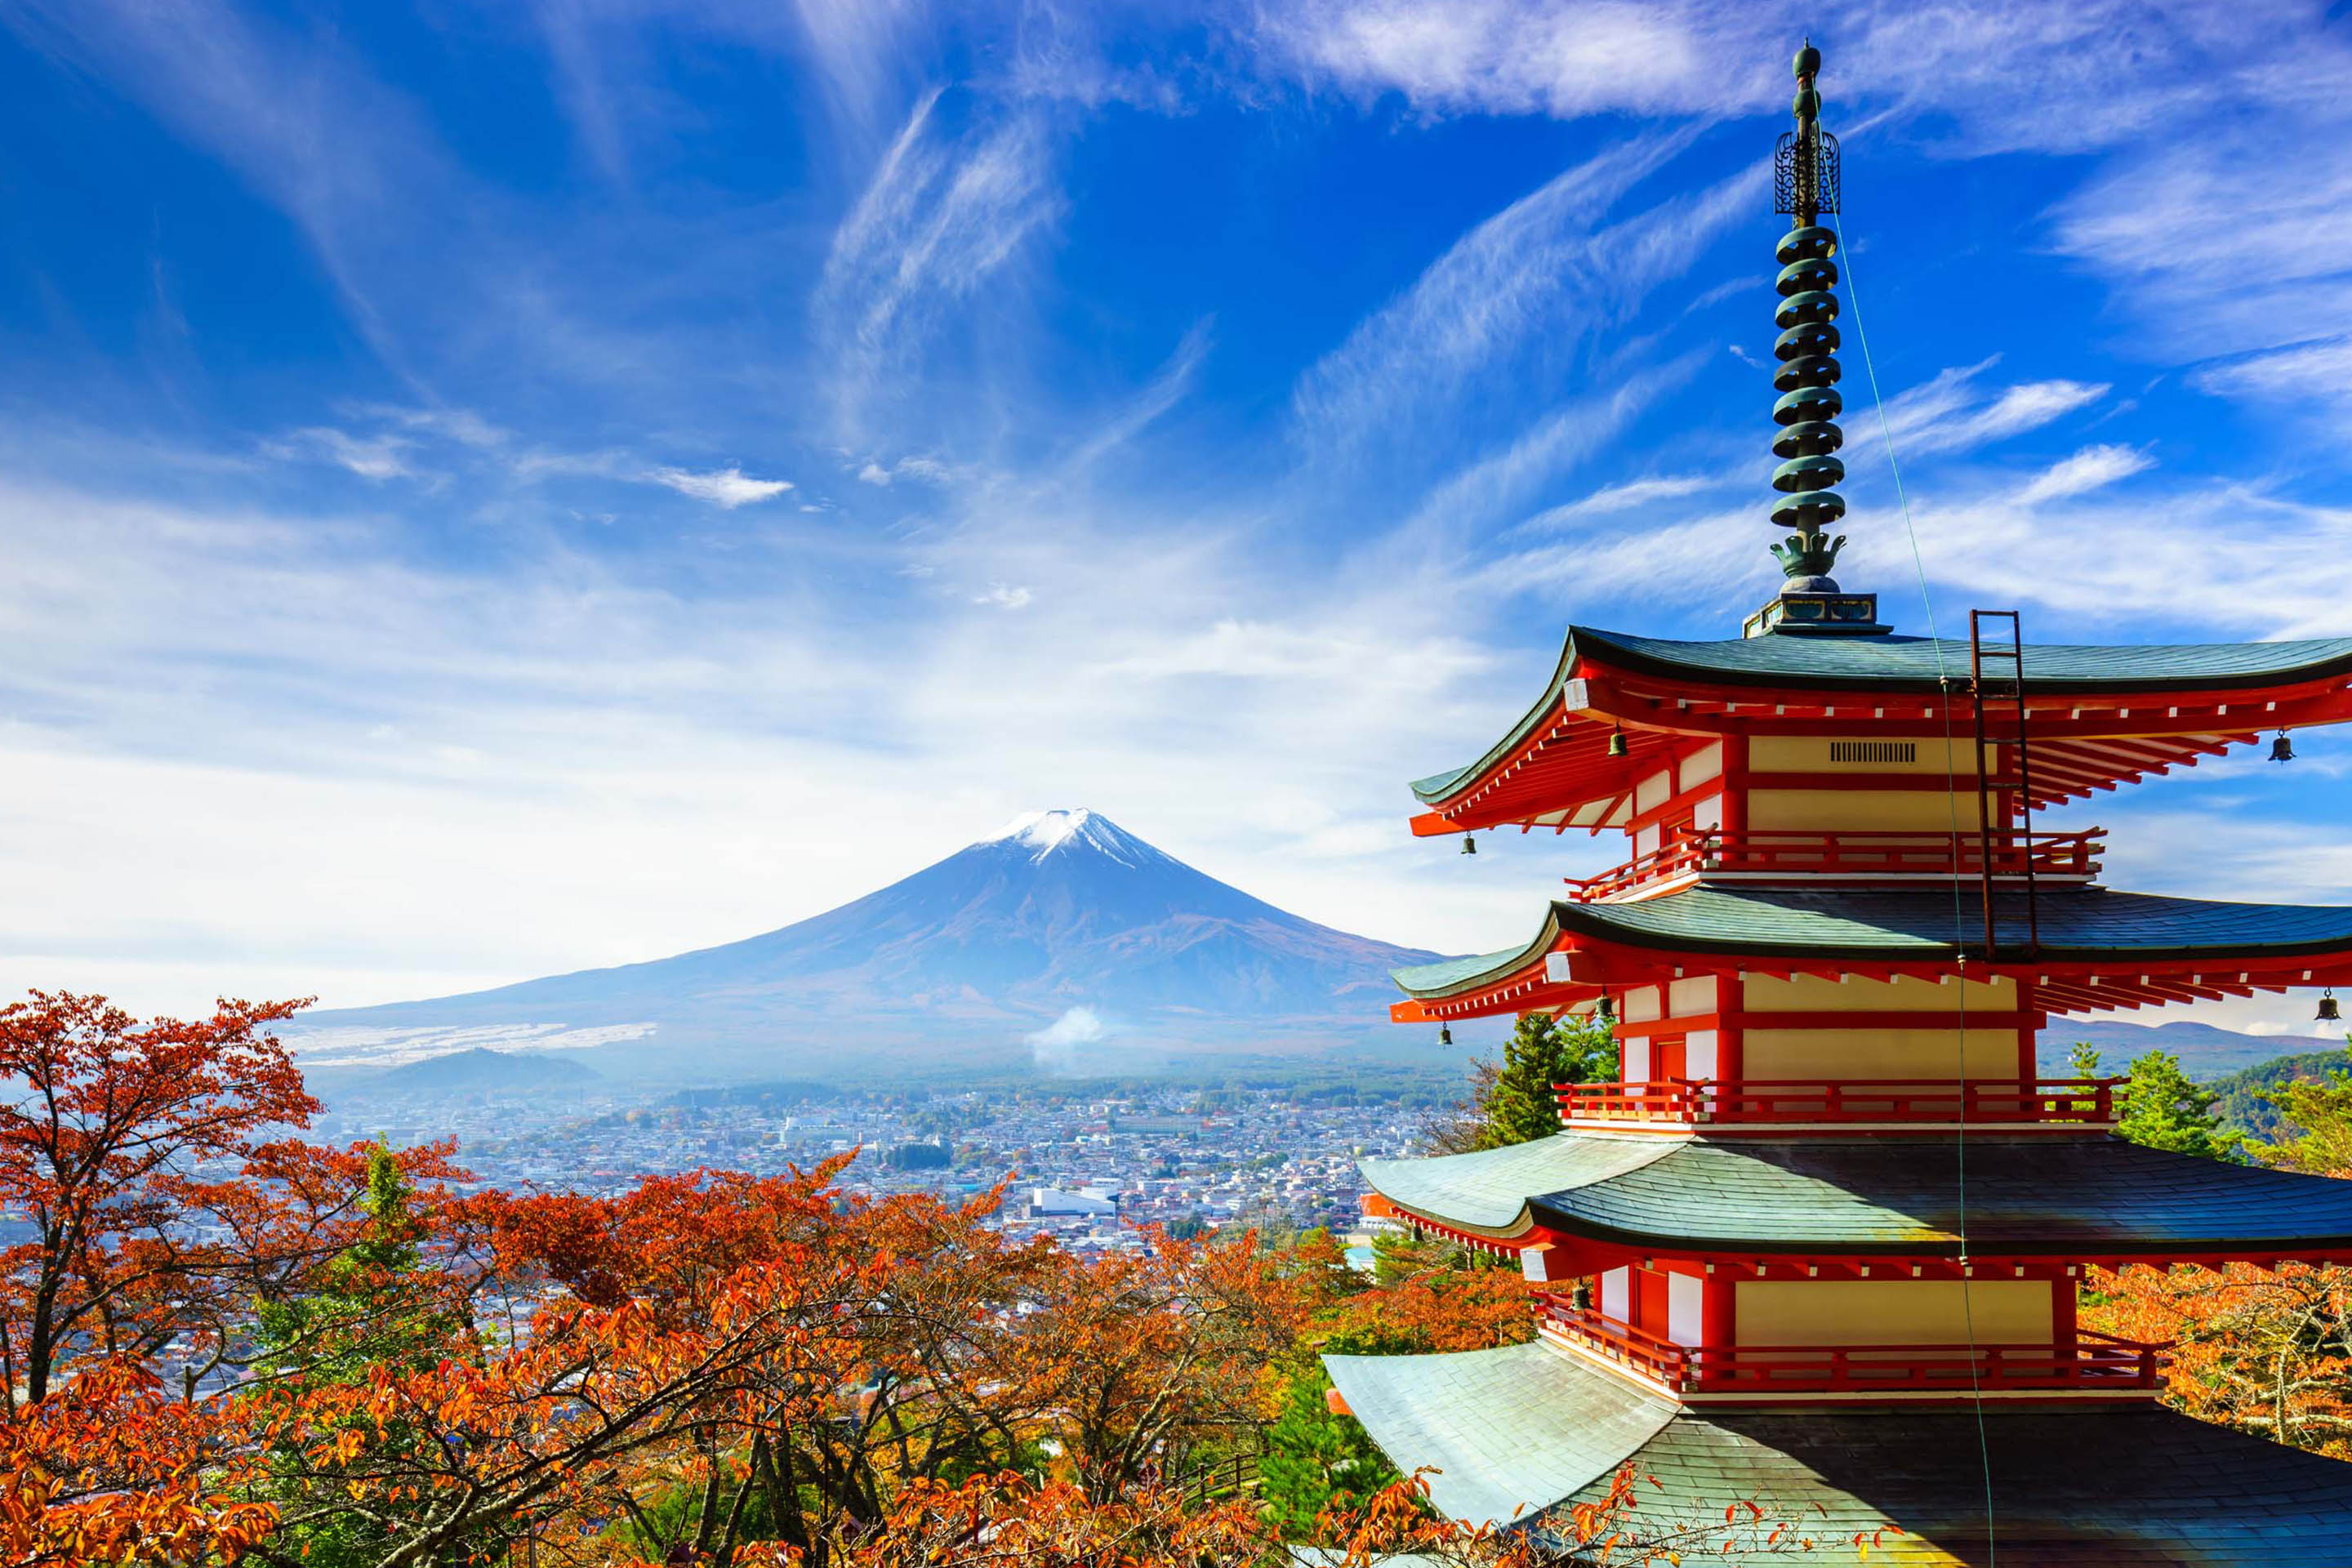 Chuyển hàng đi Nhật Bản | Giá rẻ, nhanh chóng, uy tín